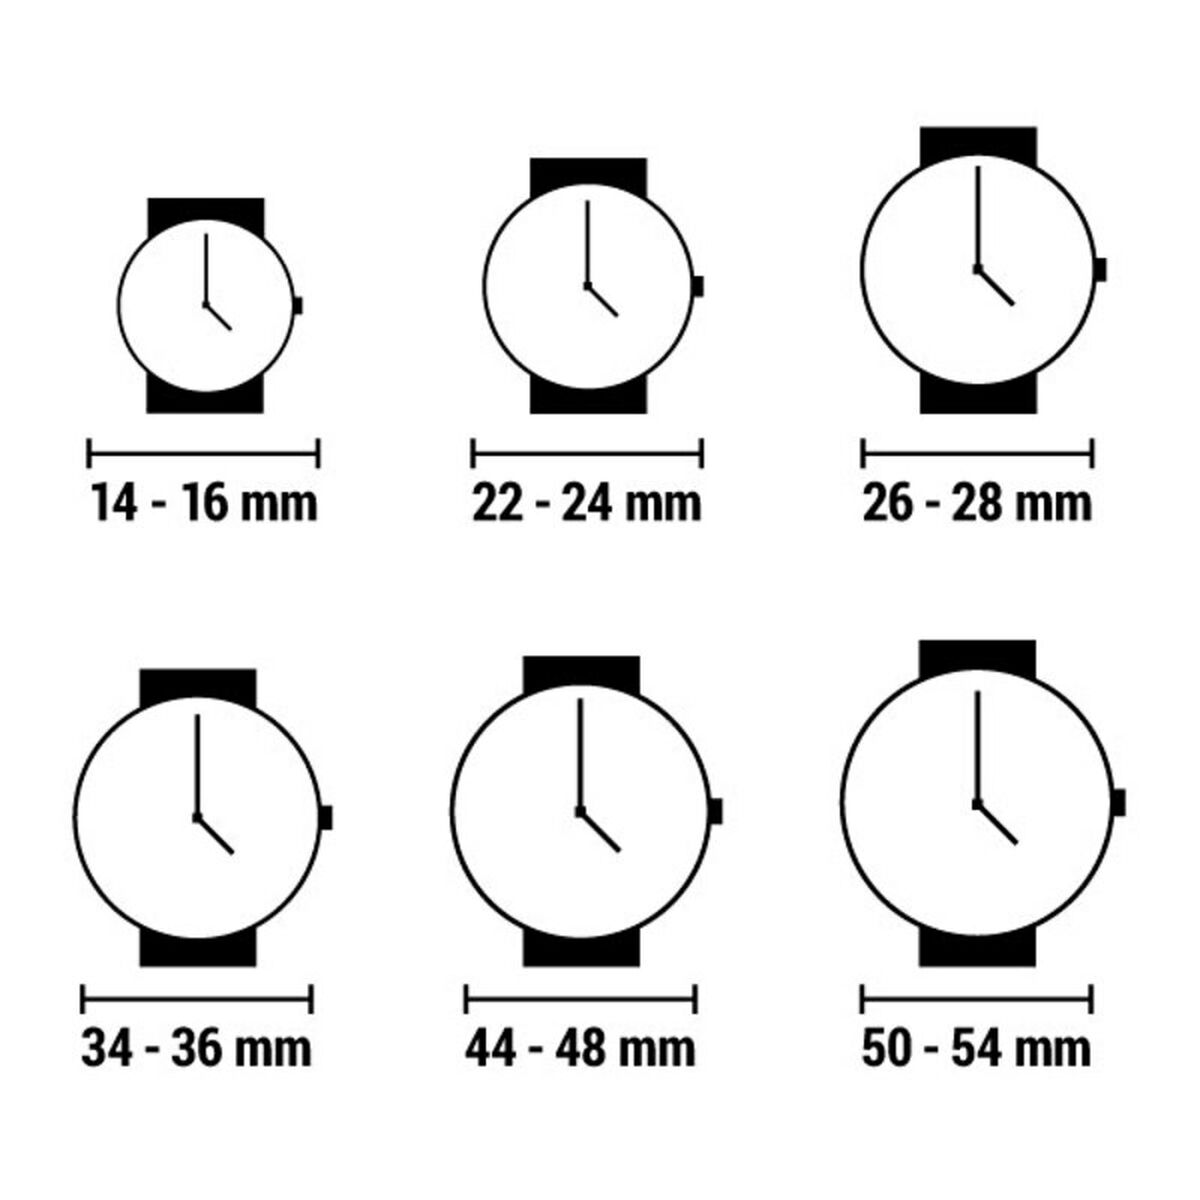 Horloge Dames Time-It ZERO_A2 (Ø 33 mm)